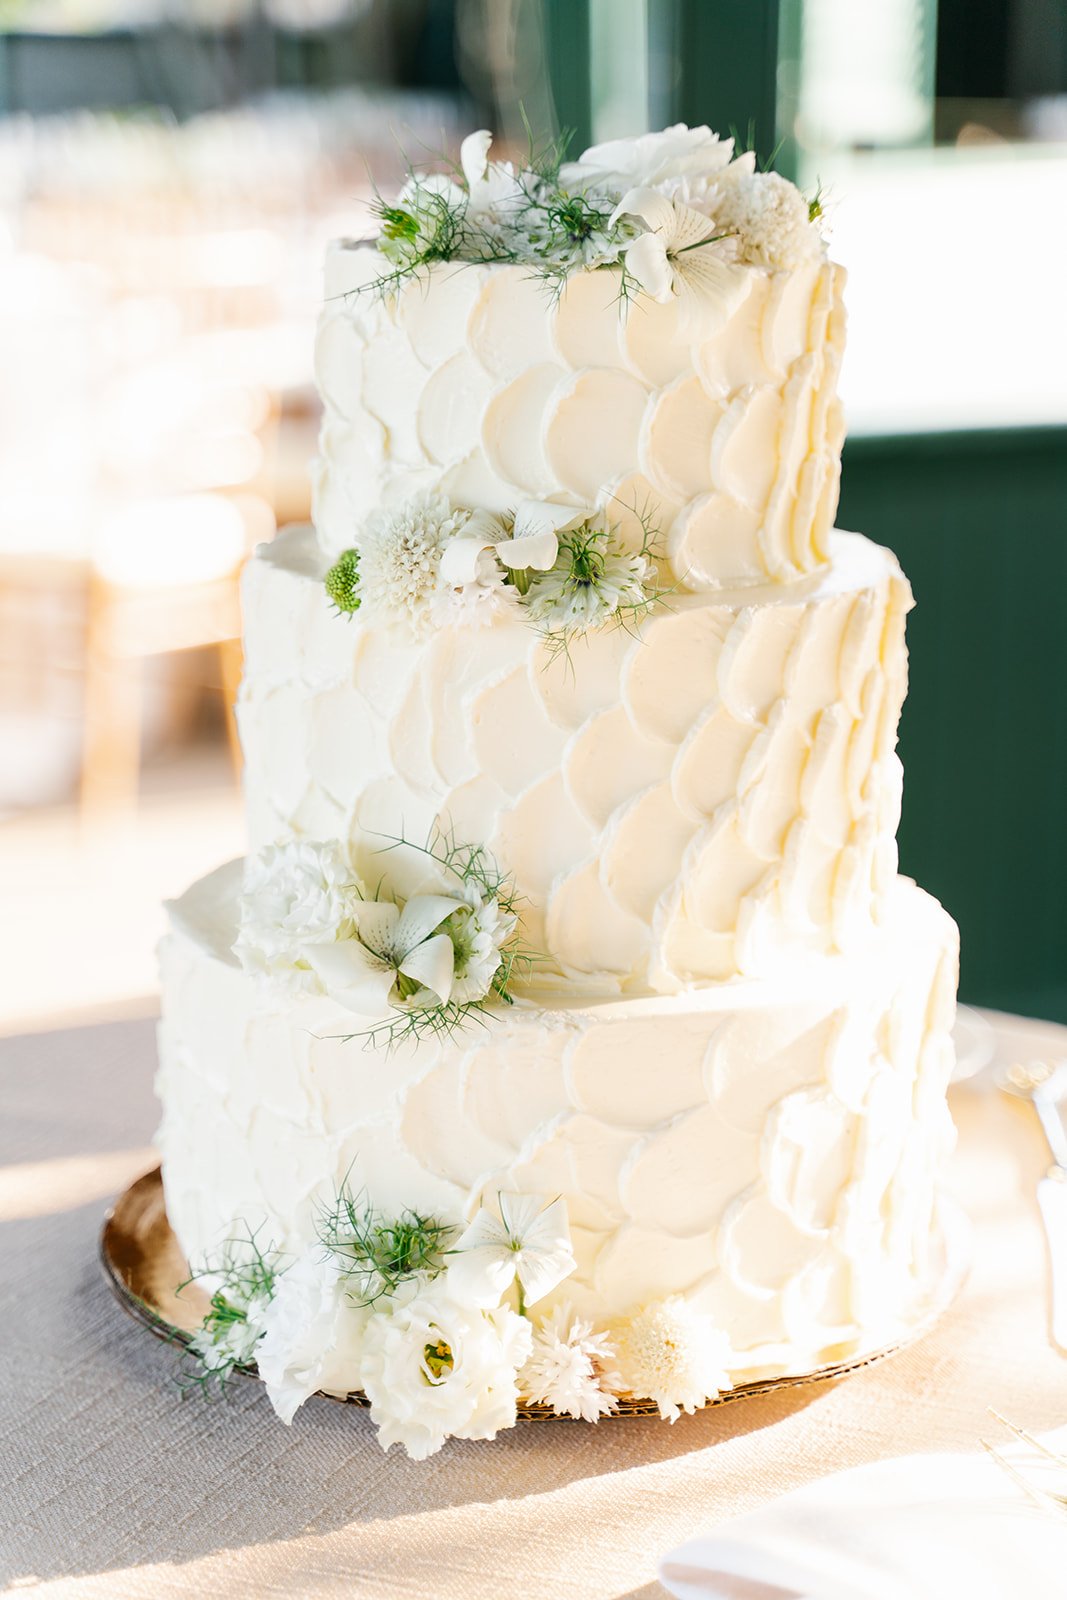 Modern understated wedding cake with florals